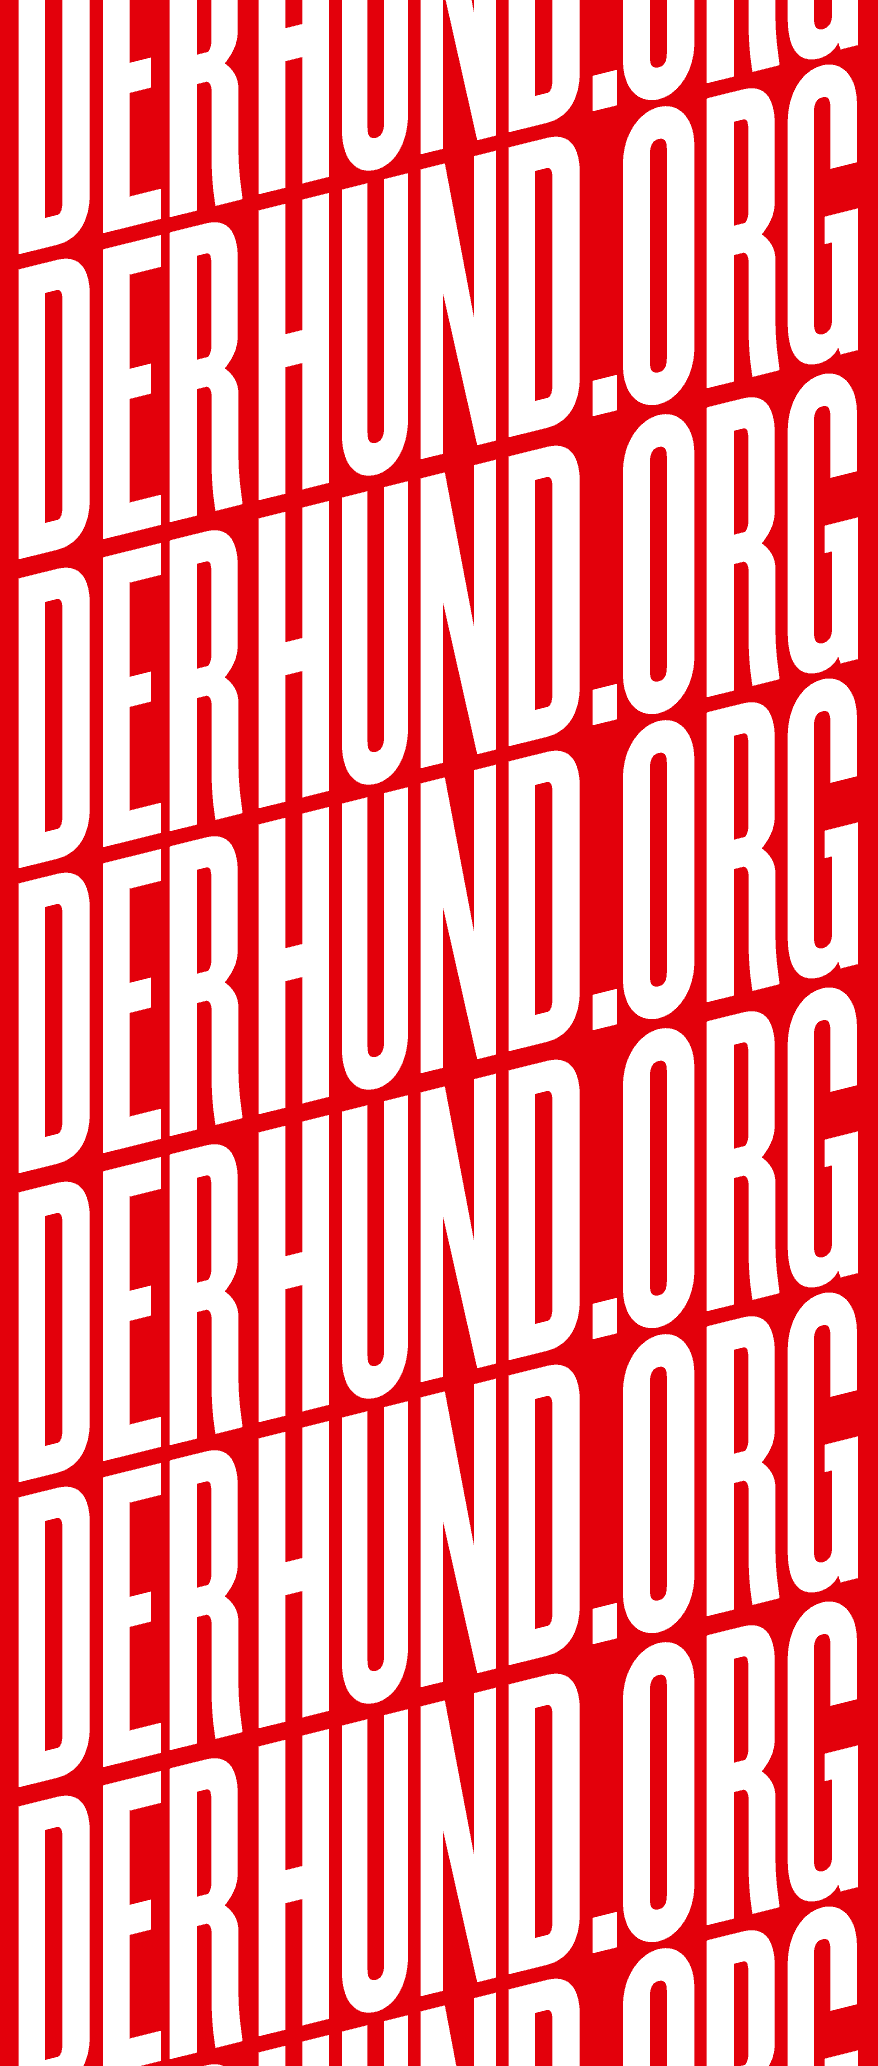 Kleon Medugorac DERHUND.ORG CARD corporate typography  